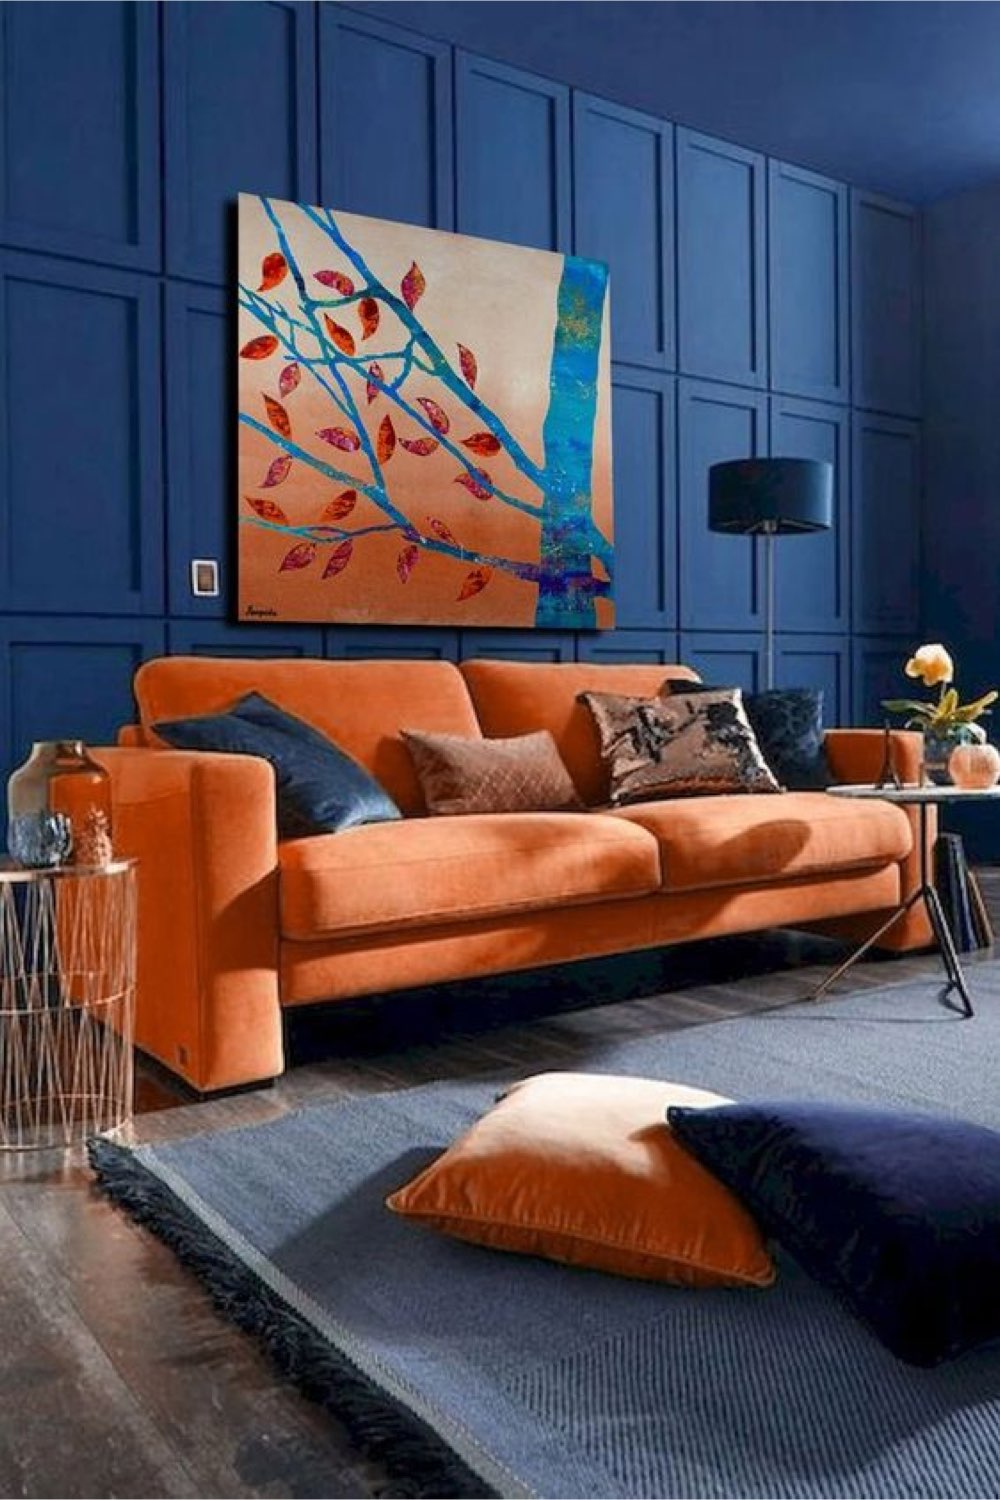 comment associer couleurs complementaires interieur salon moderne et chic moulures peinture bleu sourde canapé orange contraste